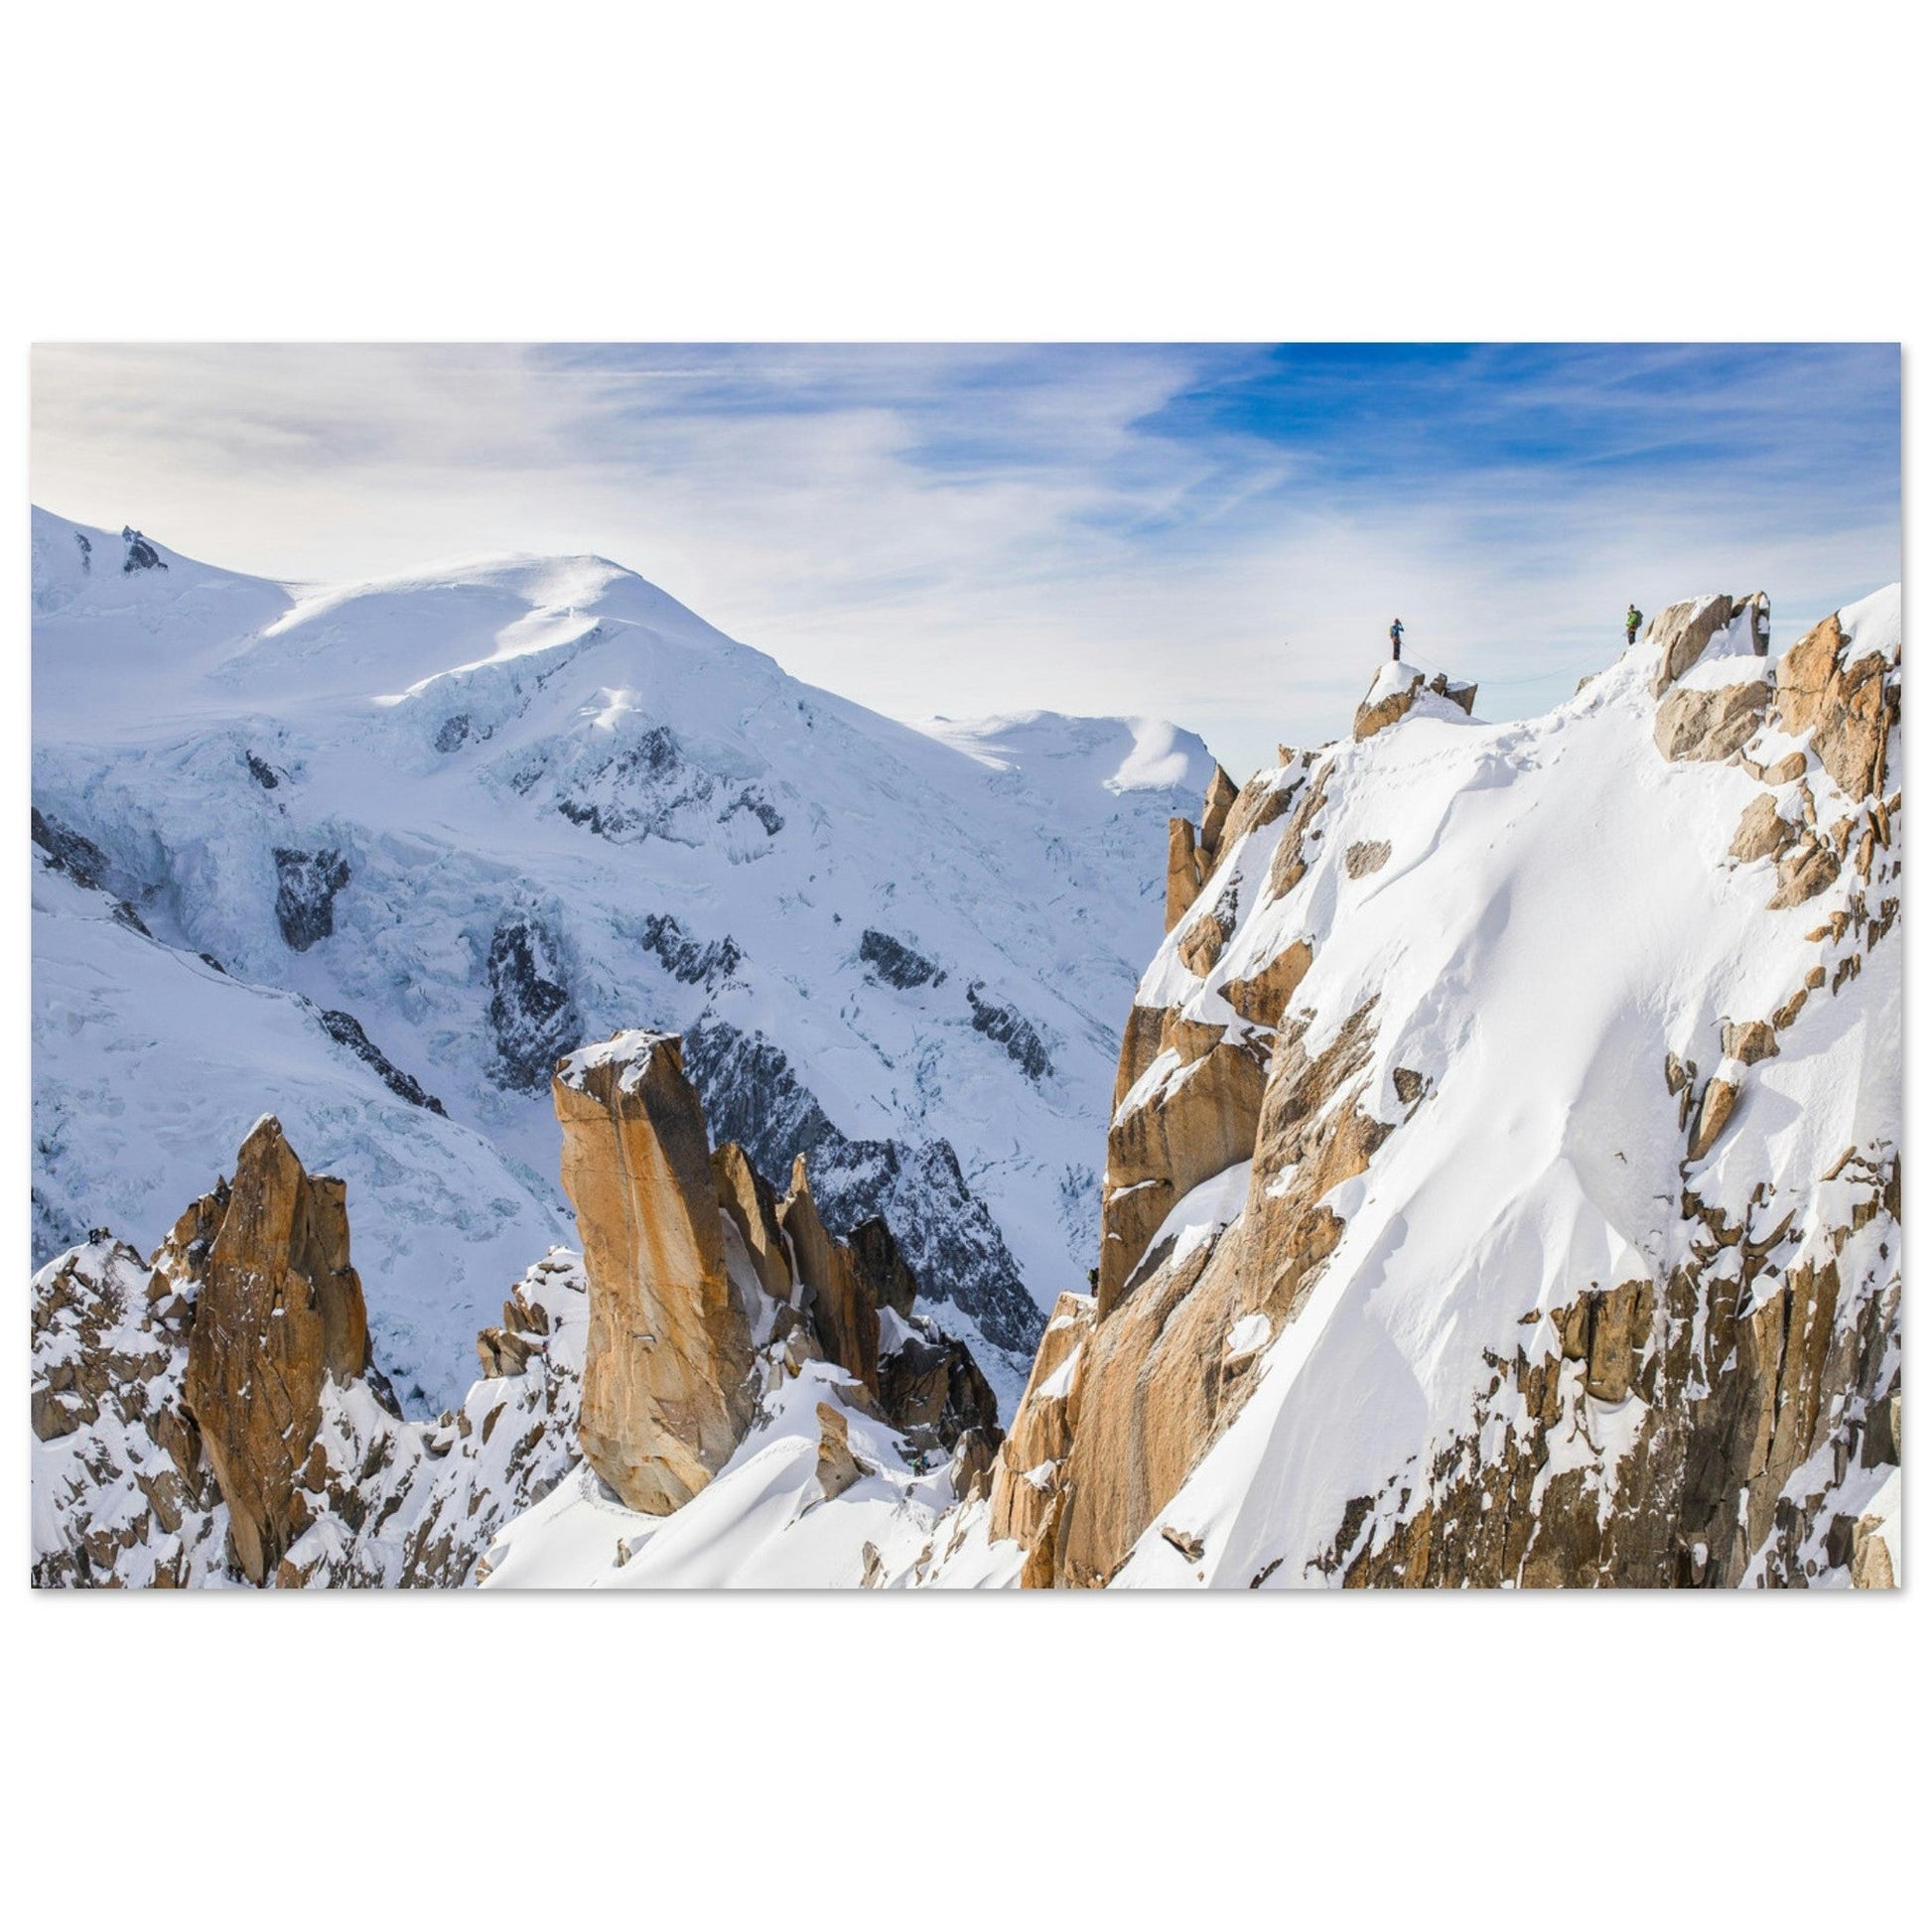 Vente Photo de l'Arête des Cosmiques, Aiguille du Midi, Chamonix - Tableau photo alu montagne